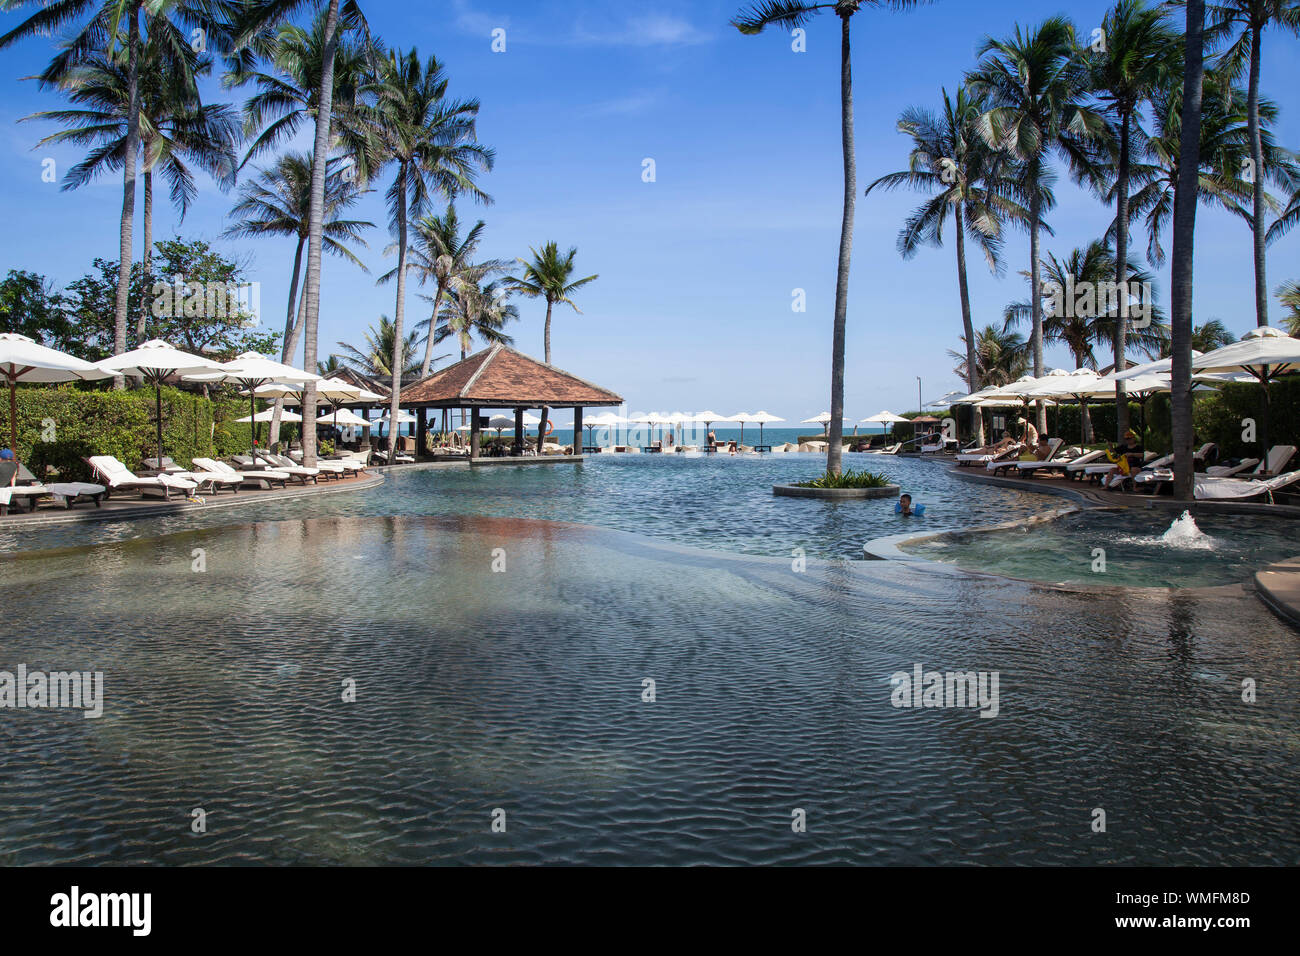 Swimmingpool, Anantara-Resort &Spa, Mui Ne, Vietnam, asia Stock Photo